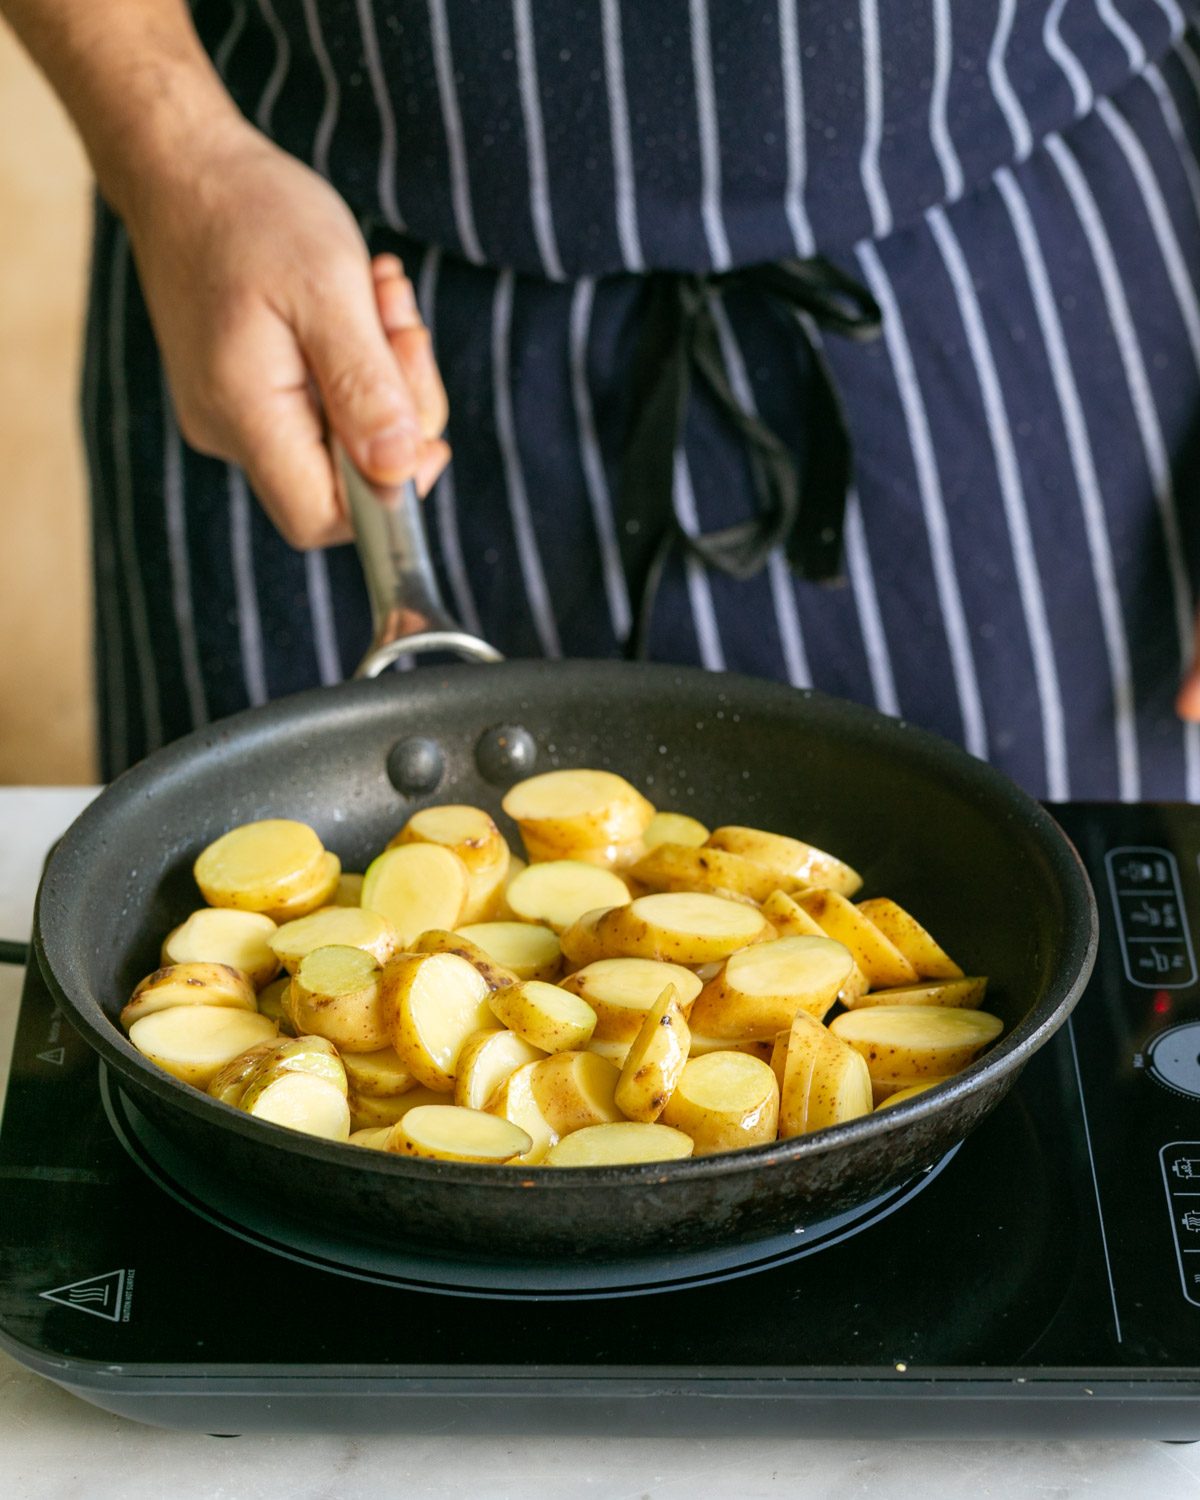 Roasting cut kipfler potatoes in a pan